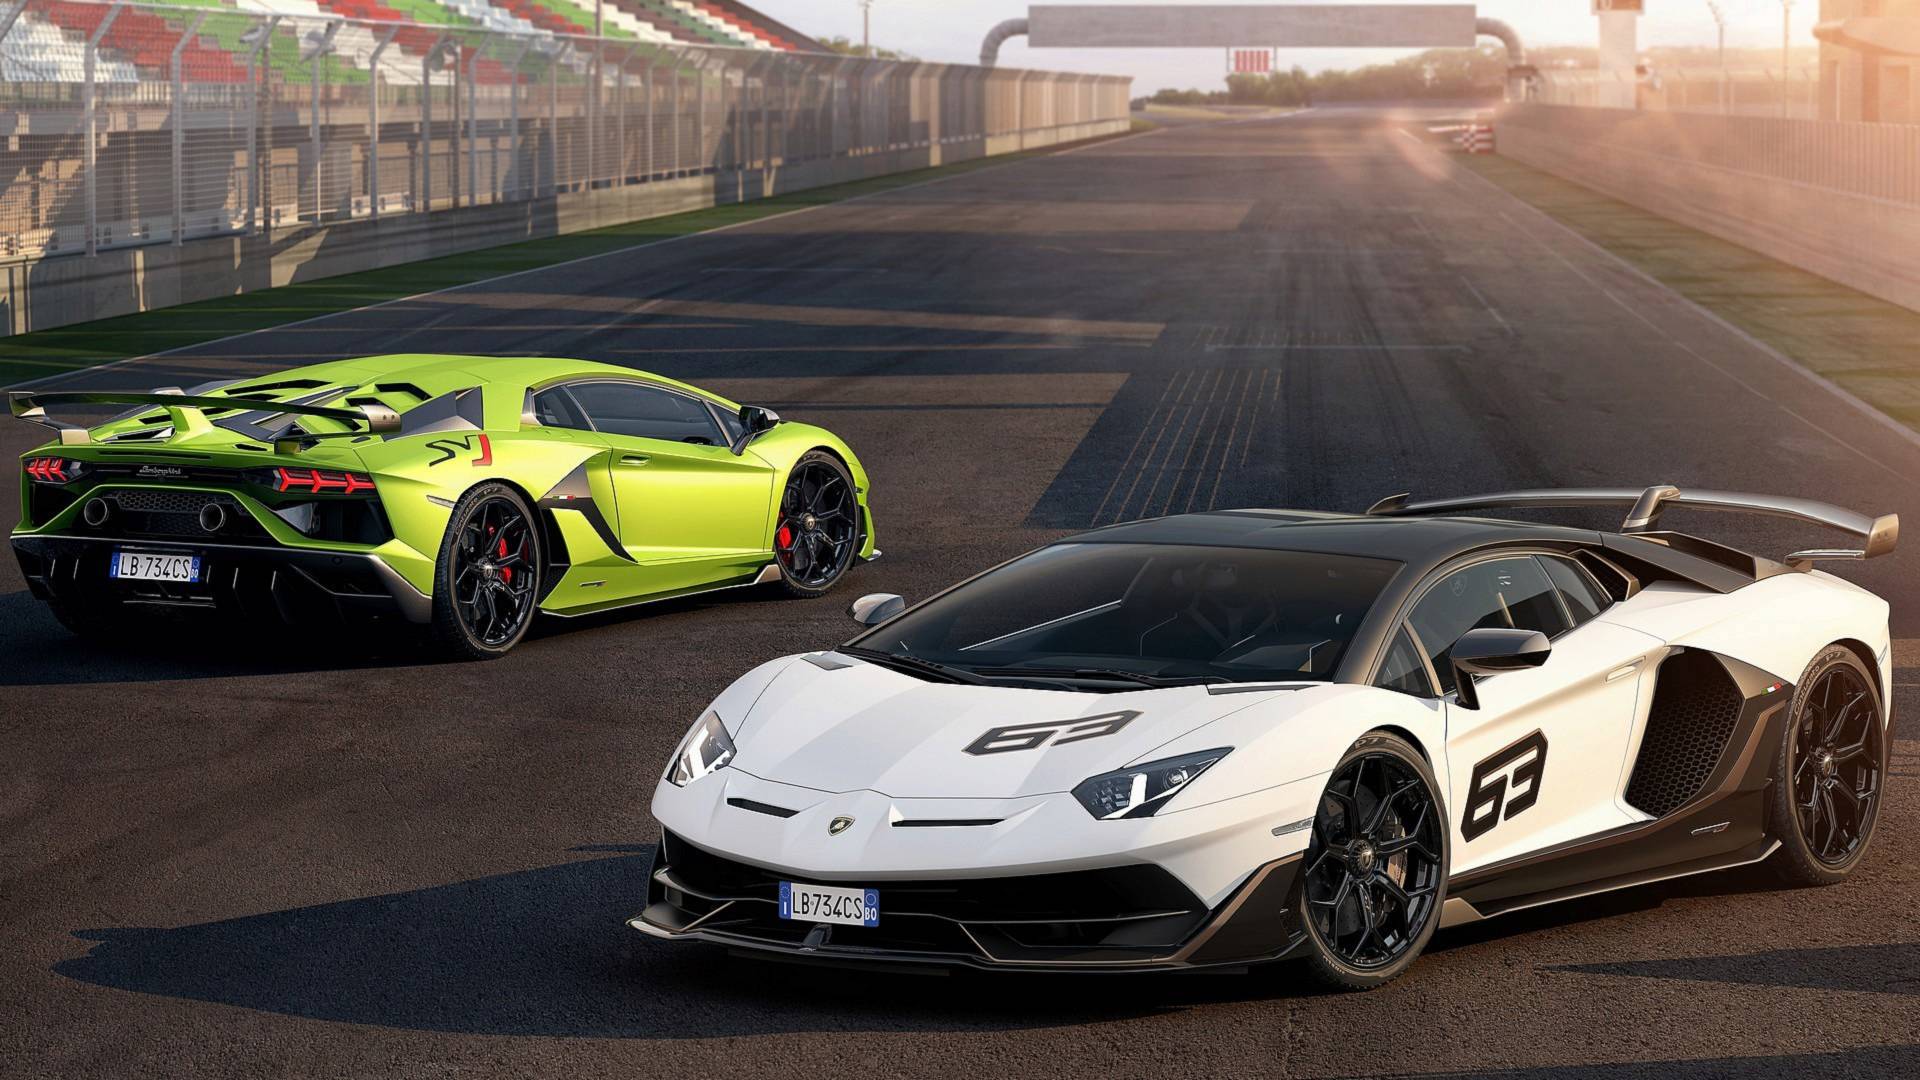 Lamborghini prepara un superdeportivo enfocado en la aerodinámica: ¡primera información!